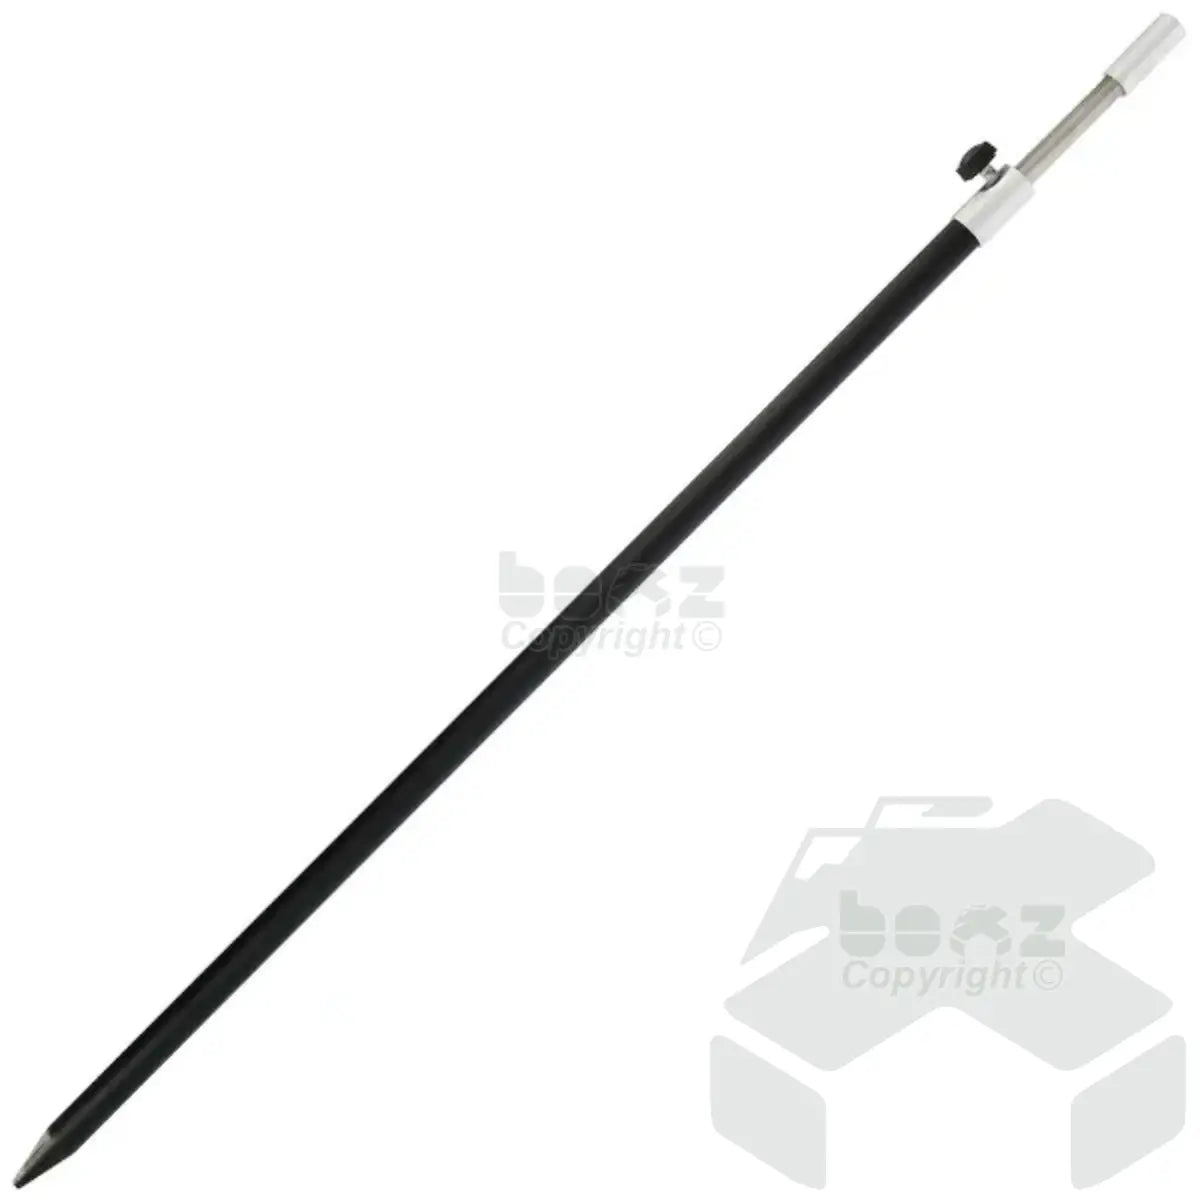 NGT Aluminium Bank Stick - 50-90cm (Large)